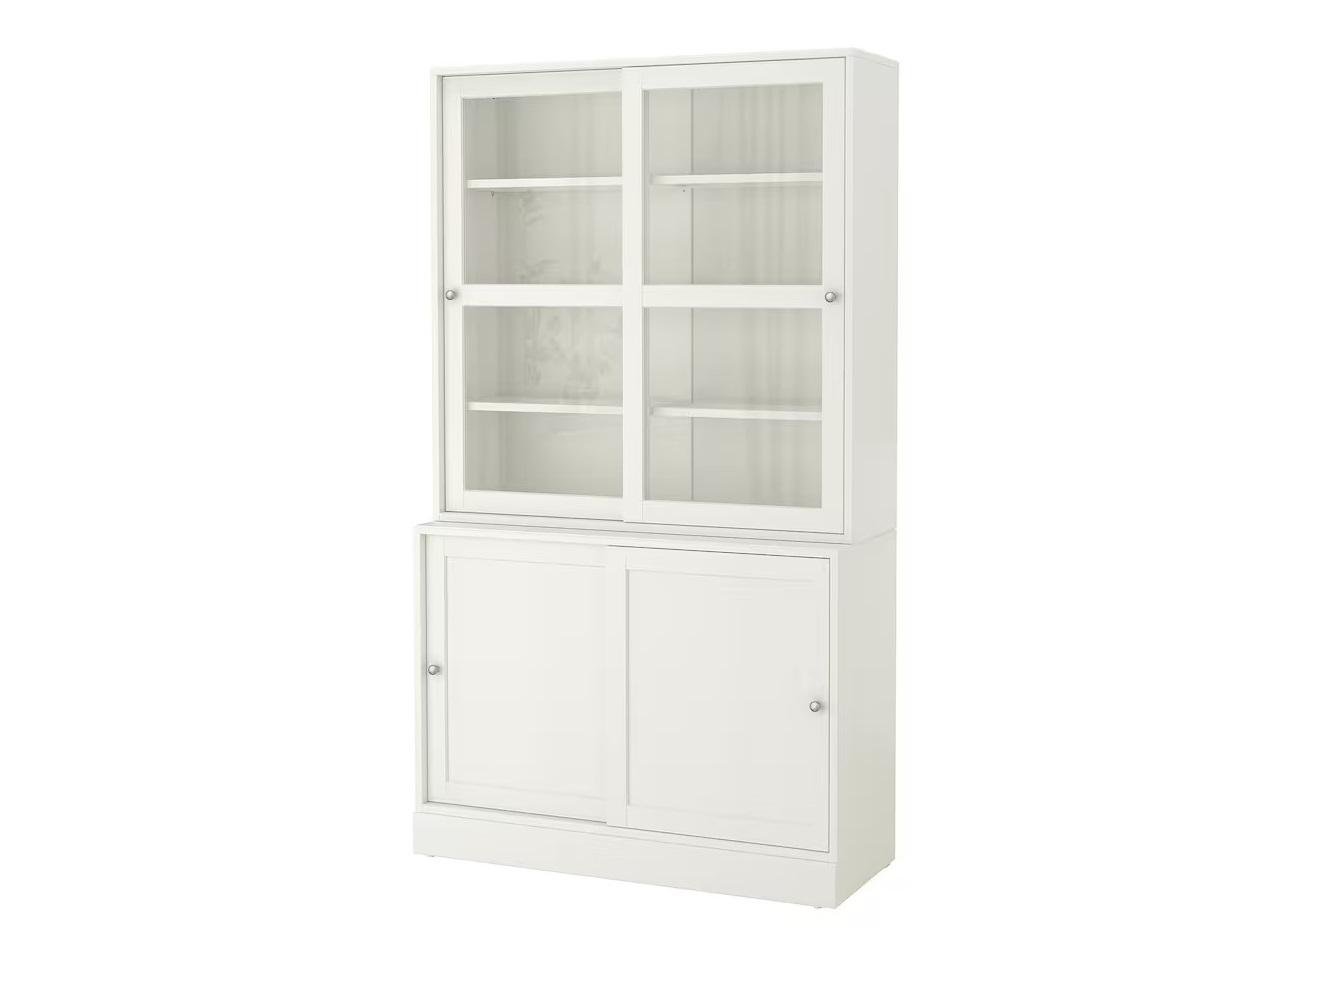 Книжный шкаф Хавста 12 white ИКЕА (IKEA) изображение товара